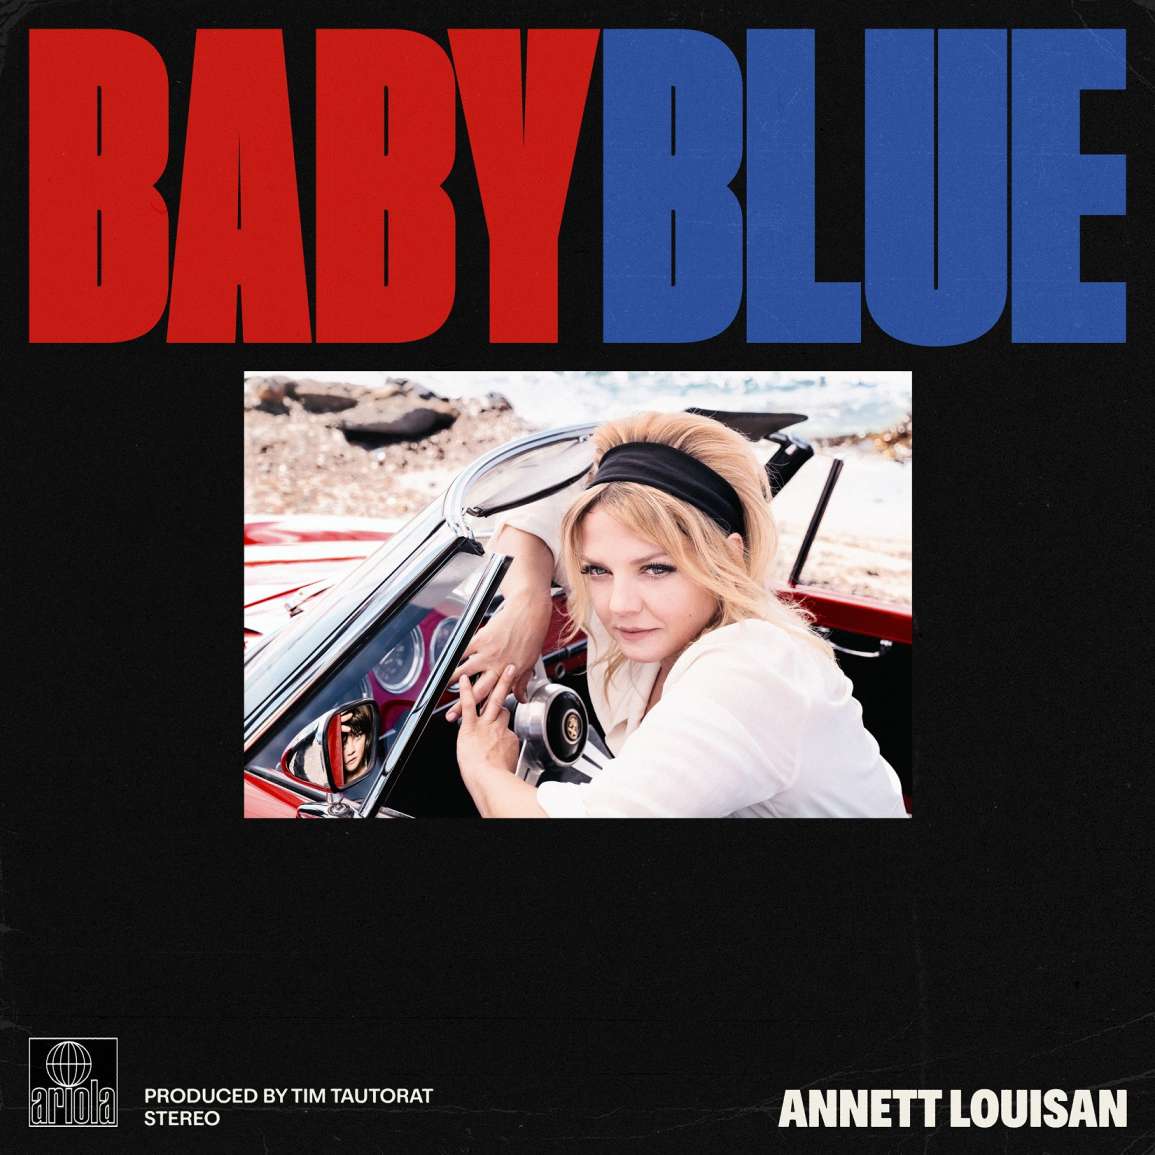 Annett Louisan — BabyBlue cover artwork